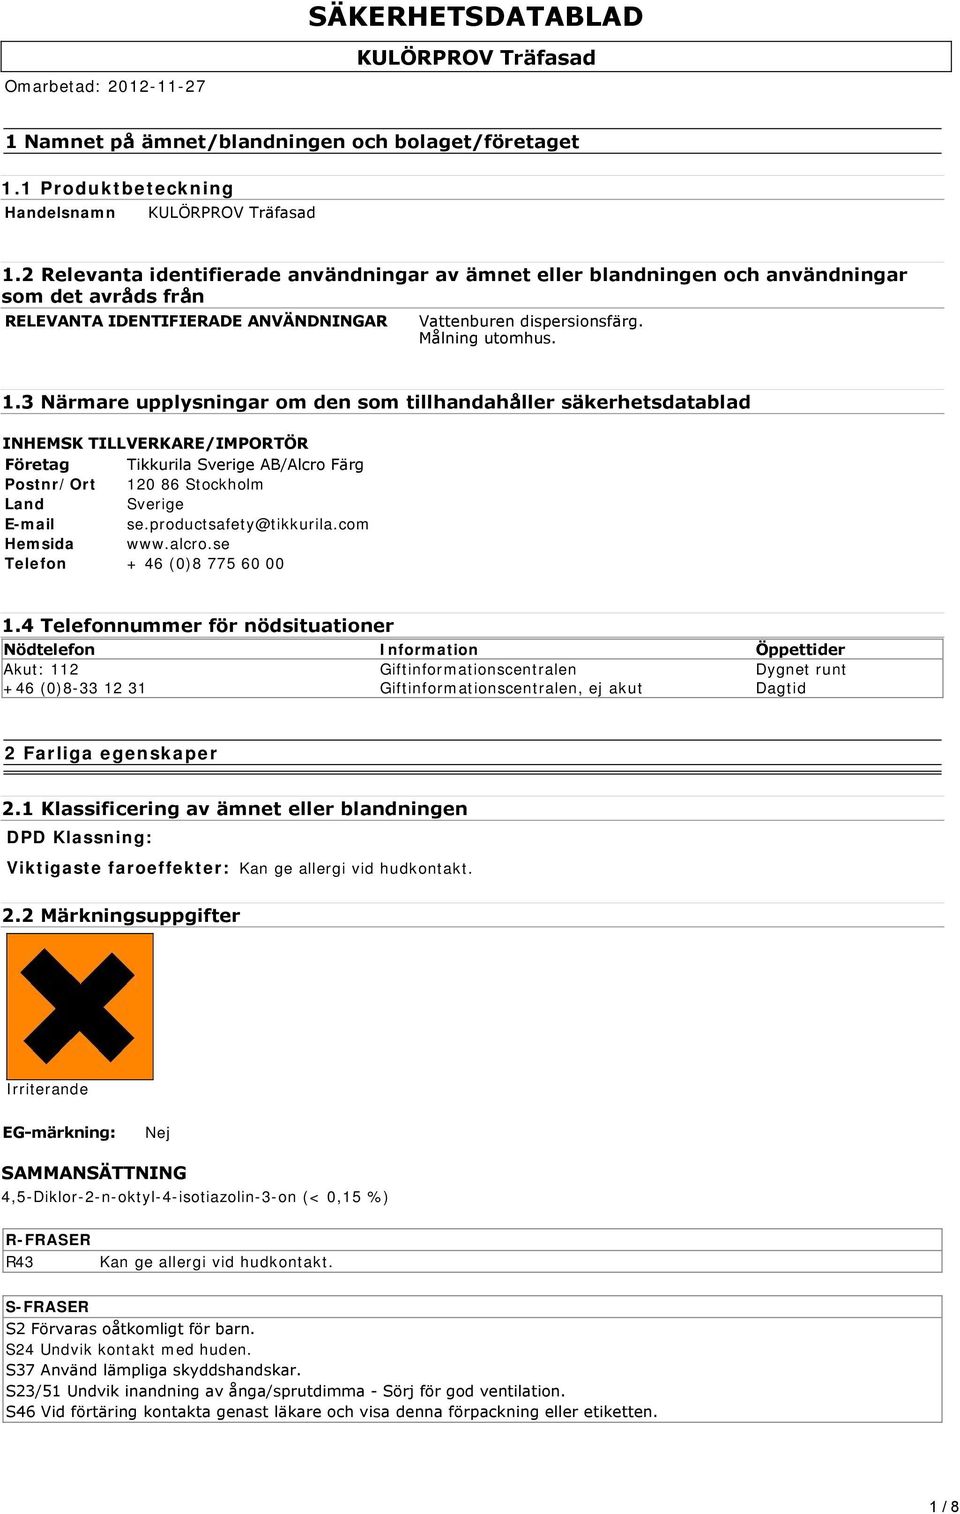 3 Närmare upplysningar om den som tillhandahåller säkerhetsdatablad INHEMSK TILLVERKARE/IMPORTÖR Företag Tikkurila Sverige AB/Alcro Färg Postnr/Ort 120 86 Stockholm Land Sverige E-mail se.